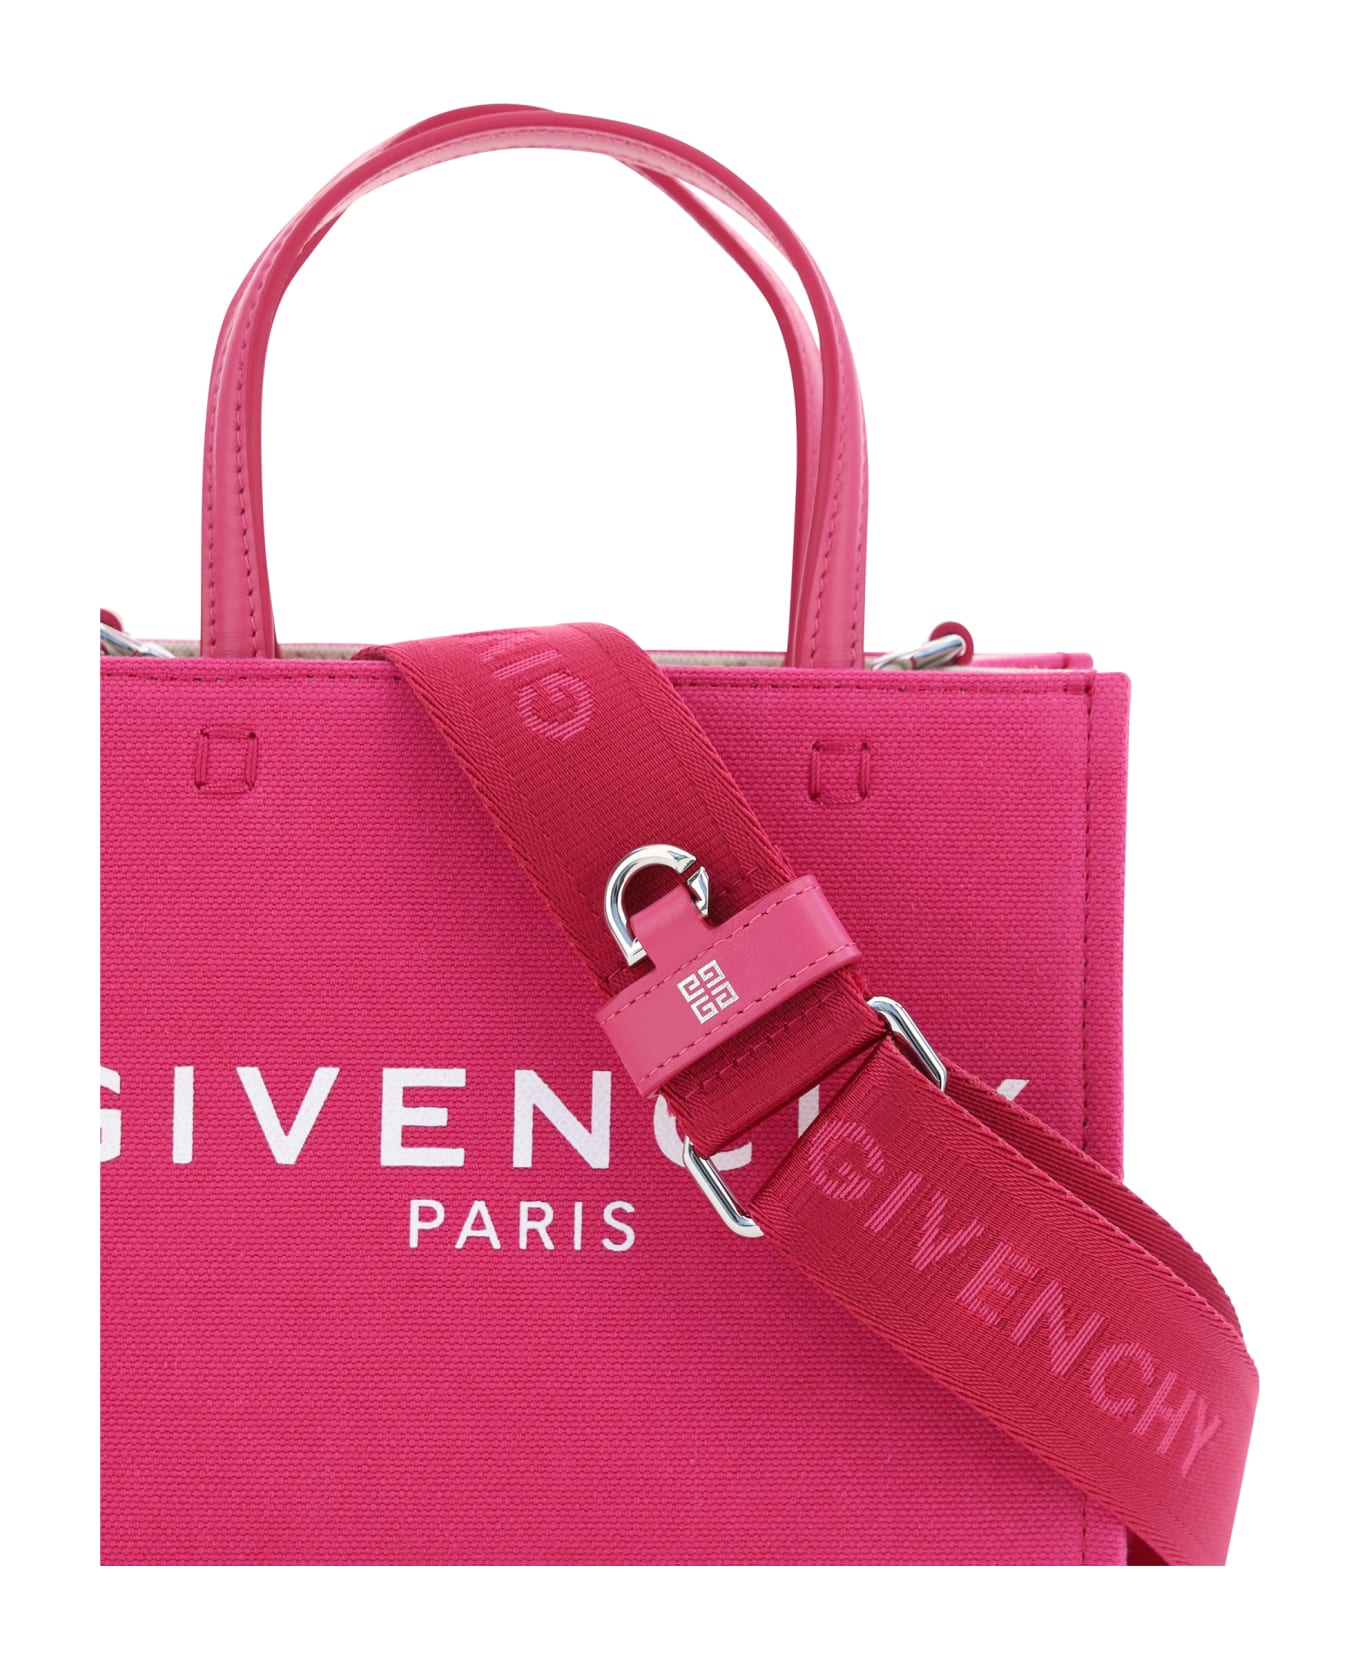 Givenchy Mini G-tote Bag - Fuchsia トートバッグ